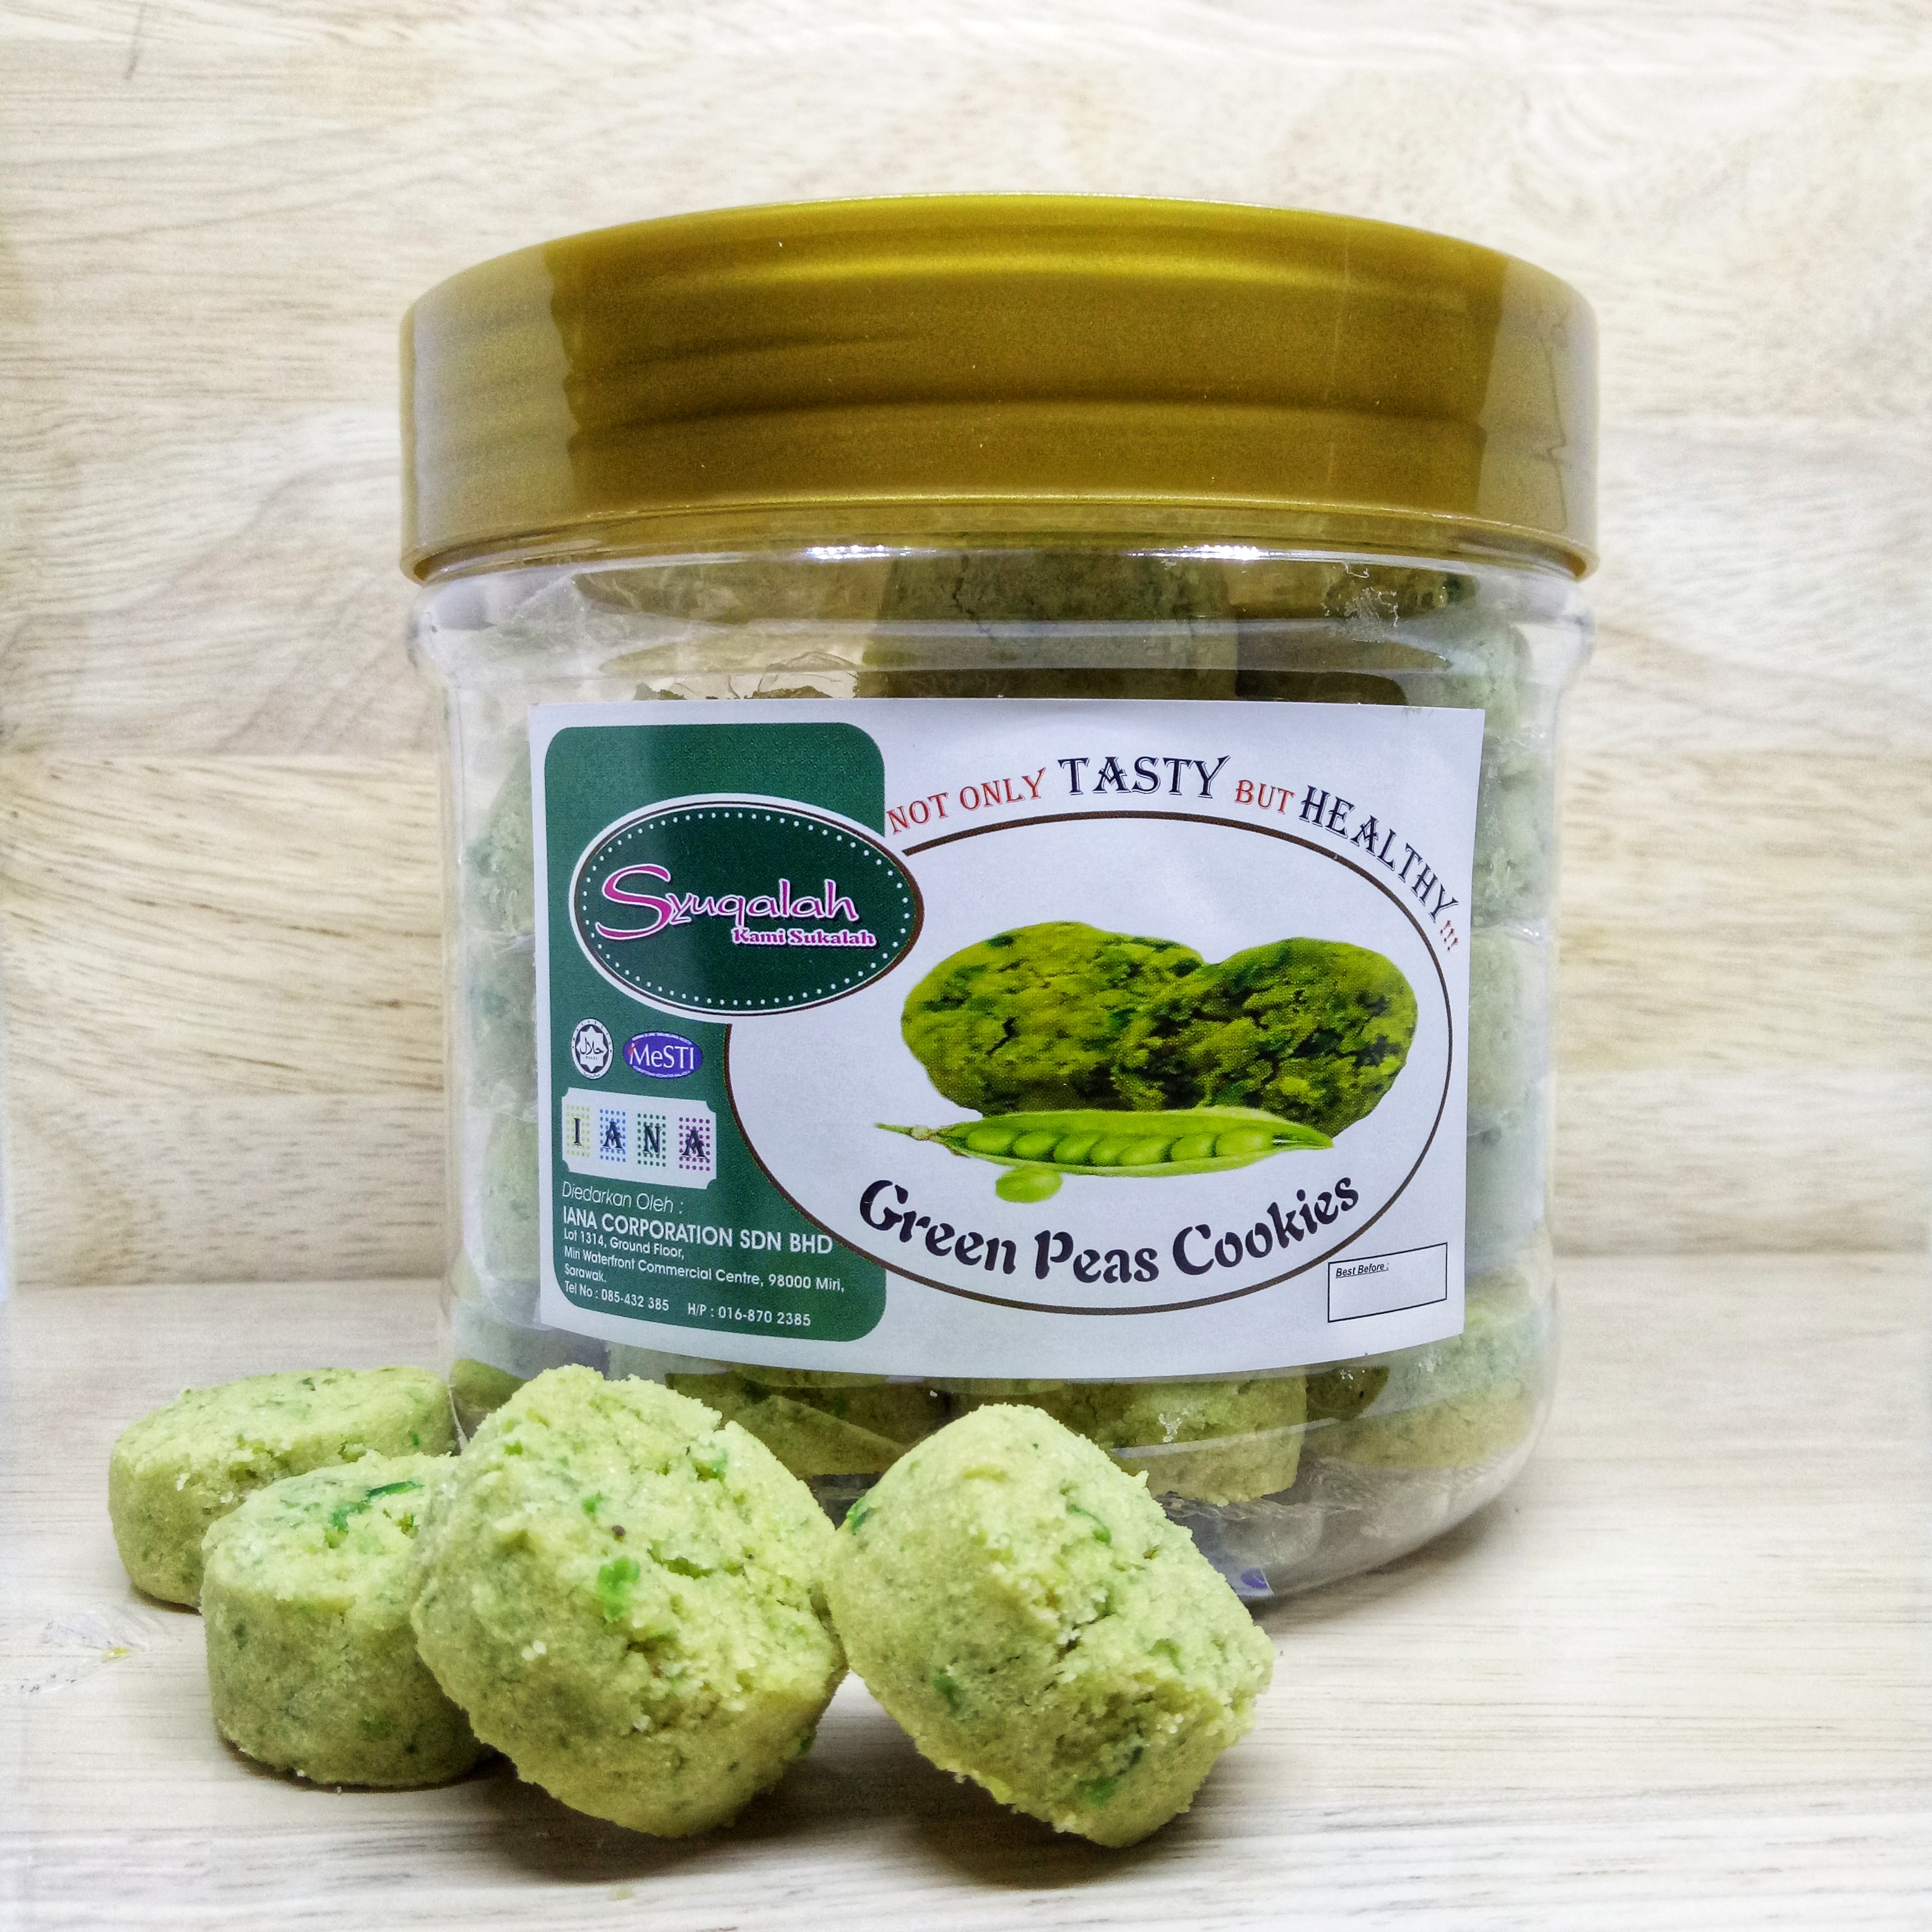 Green Peas Cookies